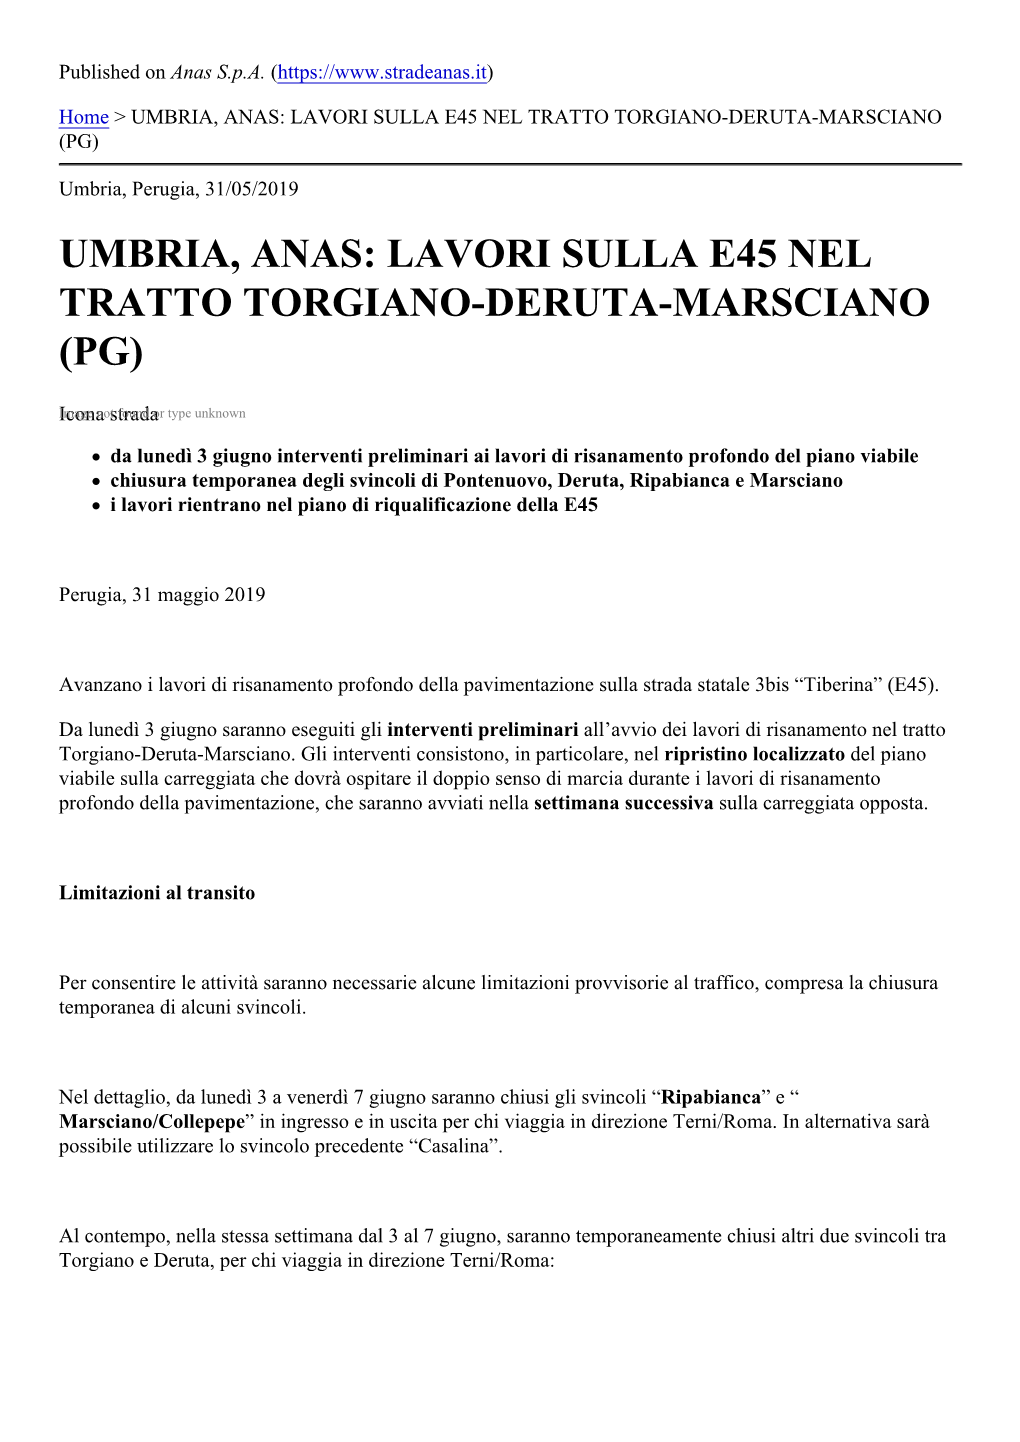 Umbria, Anas: Lavori Sulla E45 Nel Tratto Torgiano-Deruta-Marsciano (Pg)